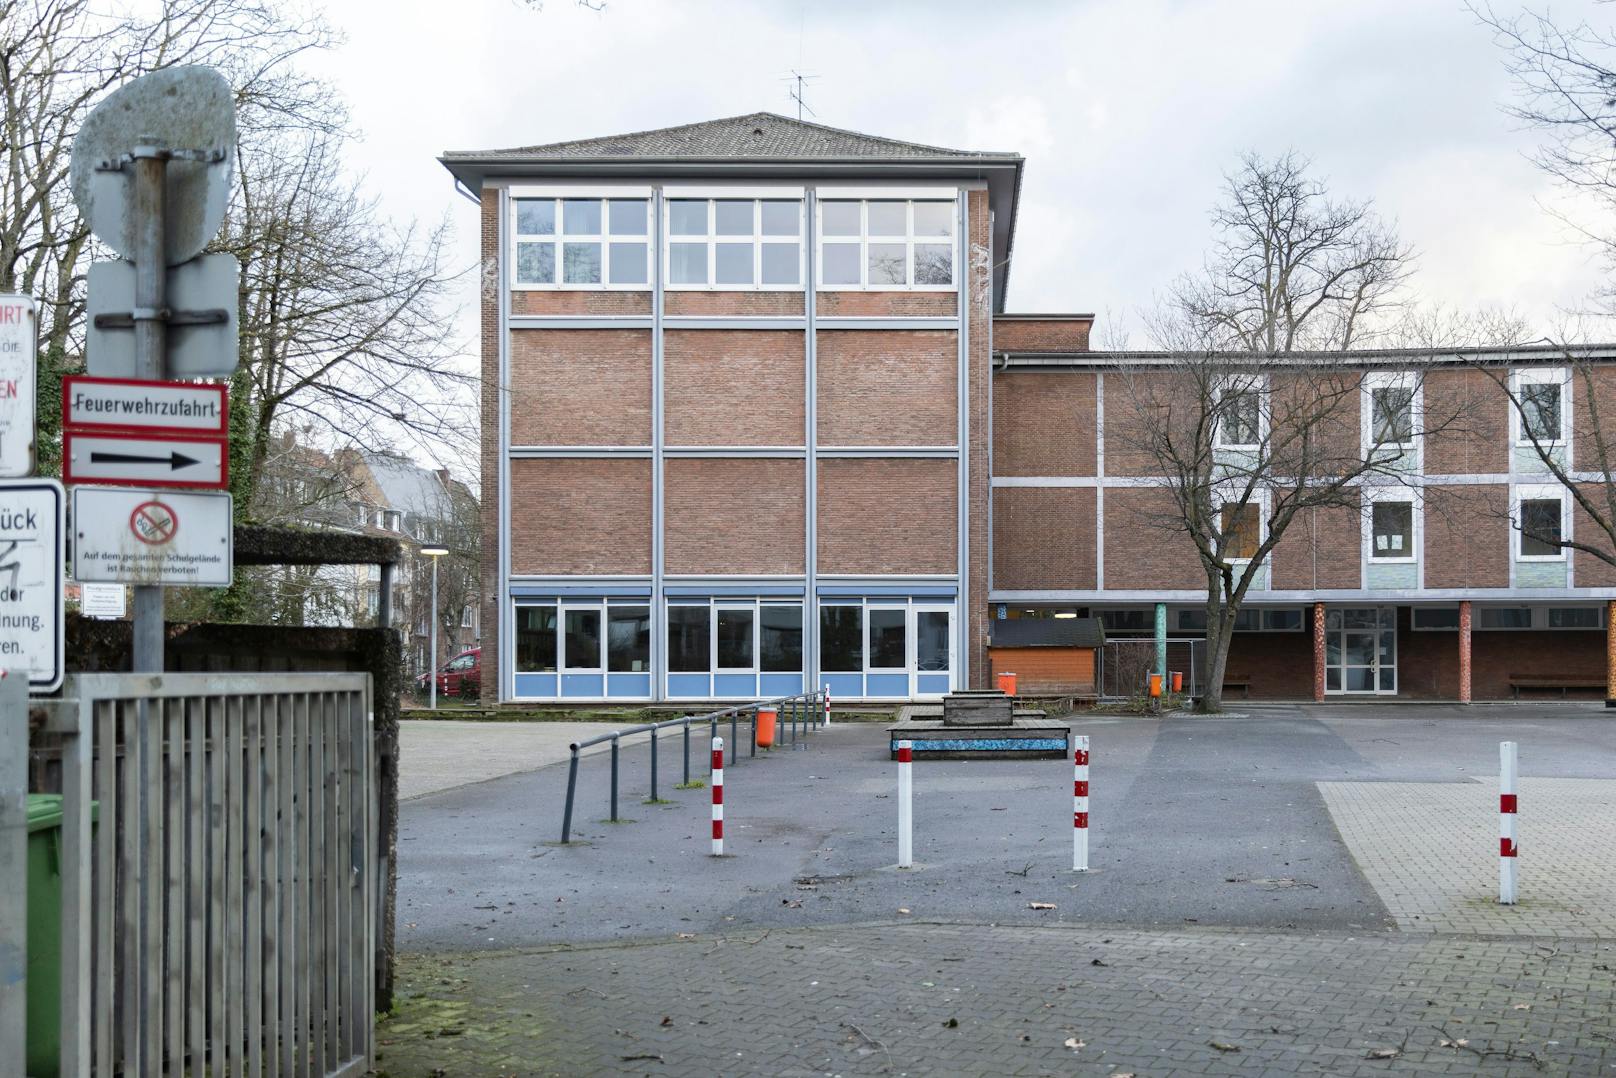 Viele Schulen bleiben wegen der Sturmwarnungen und erwarteten Unwetter geschlossen, auch diese Schule in Düsseldorf.